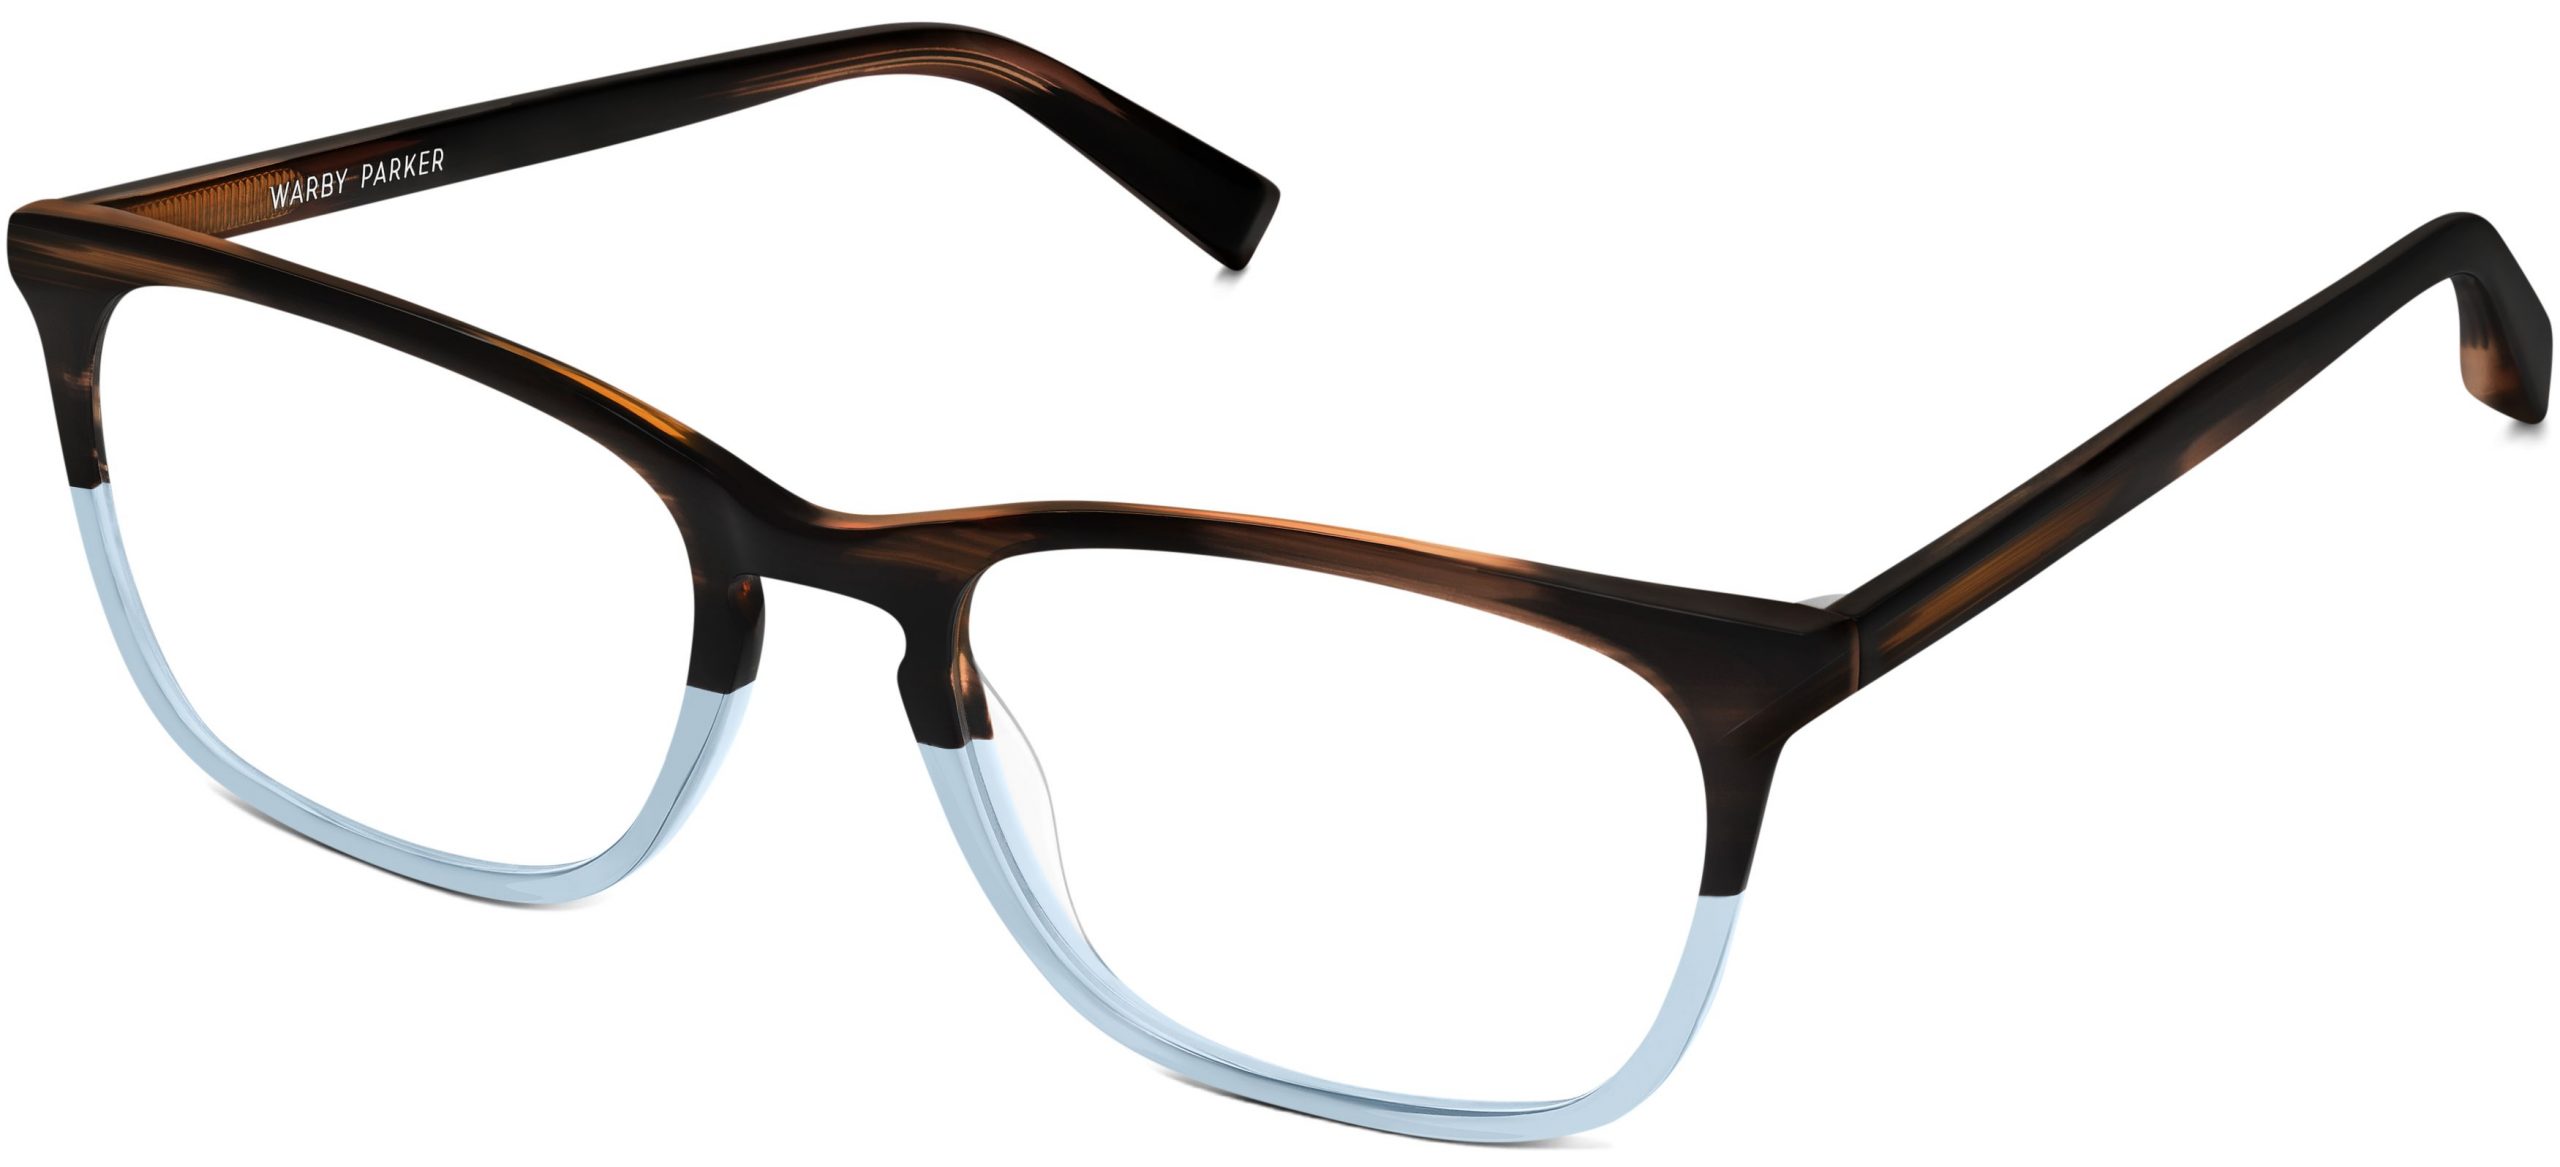 Warby-Parker-Prescription-Glasses-2